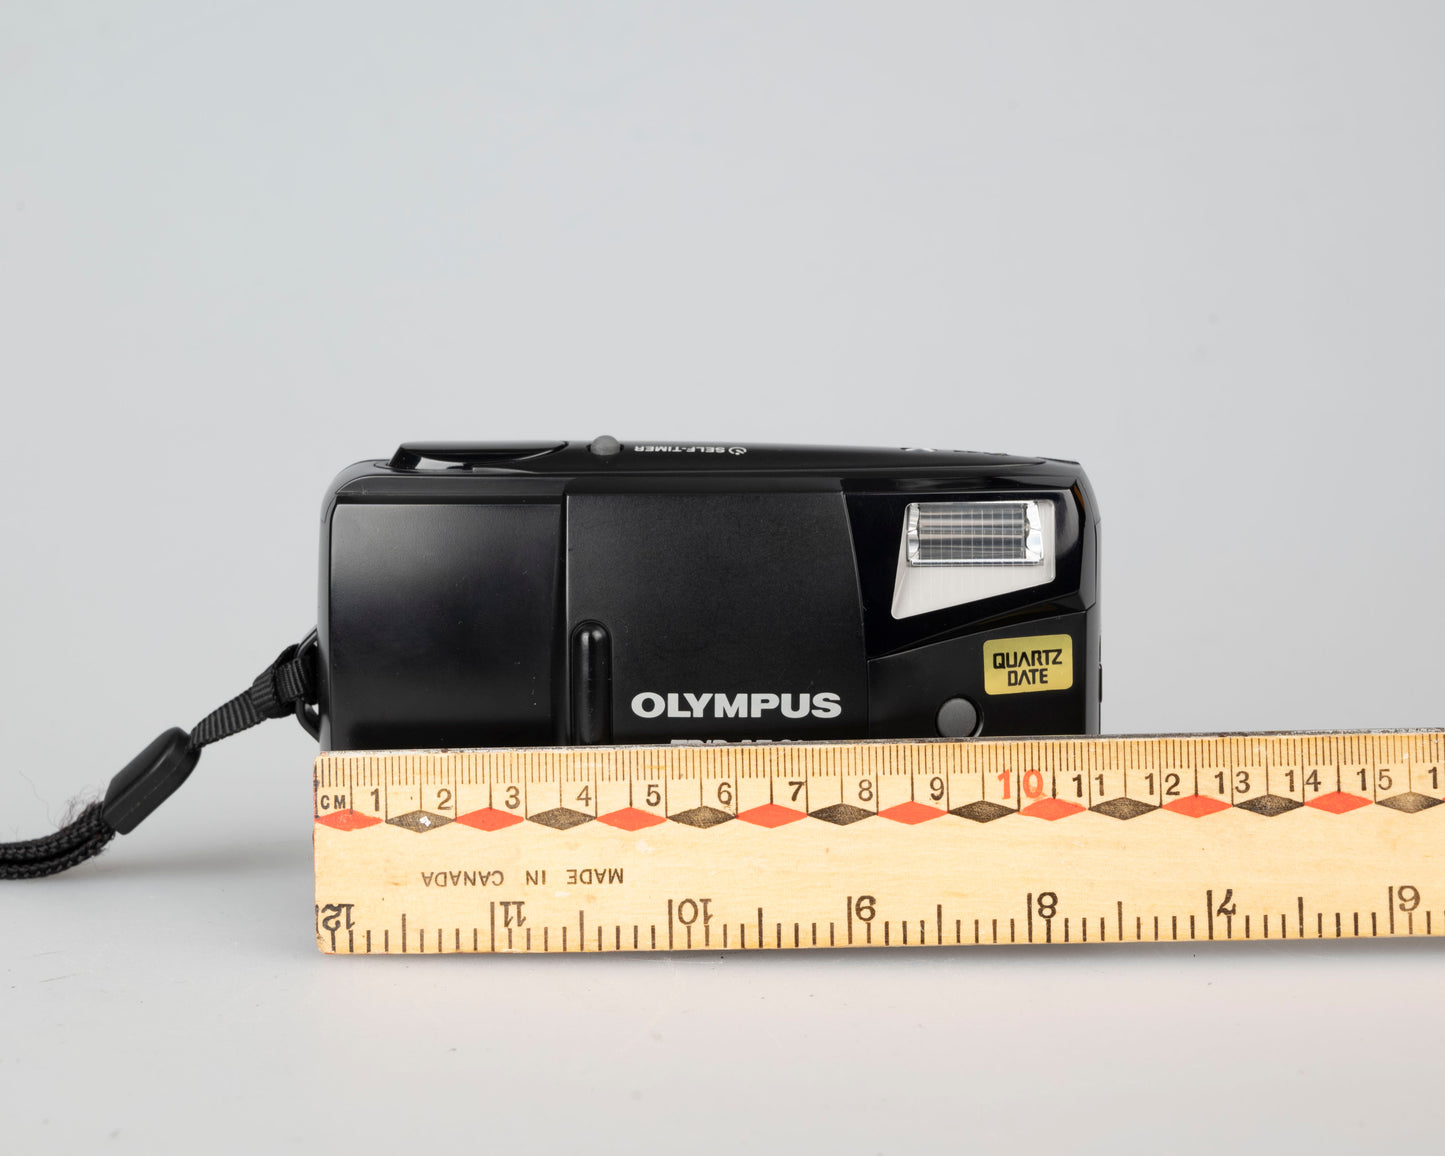 Olympus Trip AF 31 35mm camera w/ case (serial 1198562)